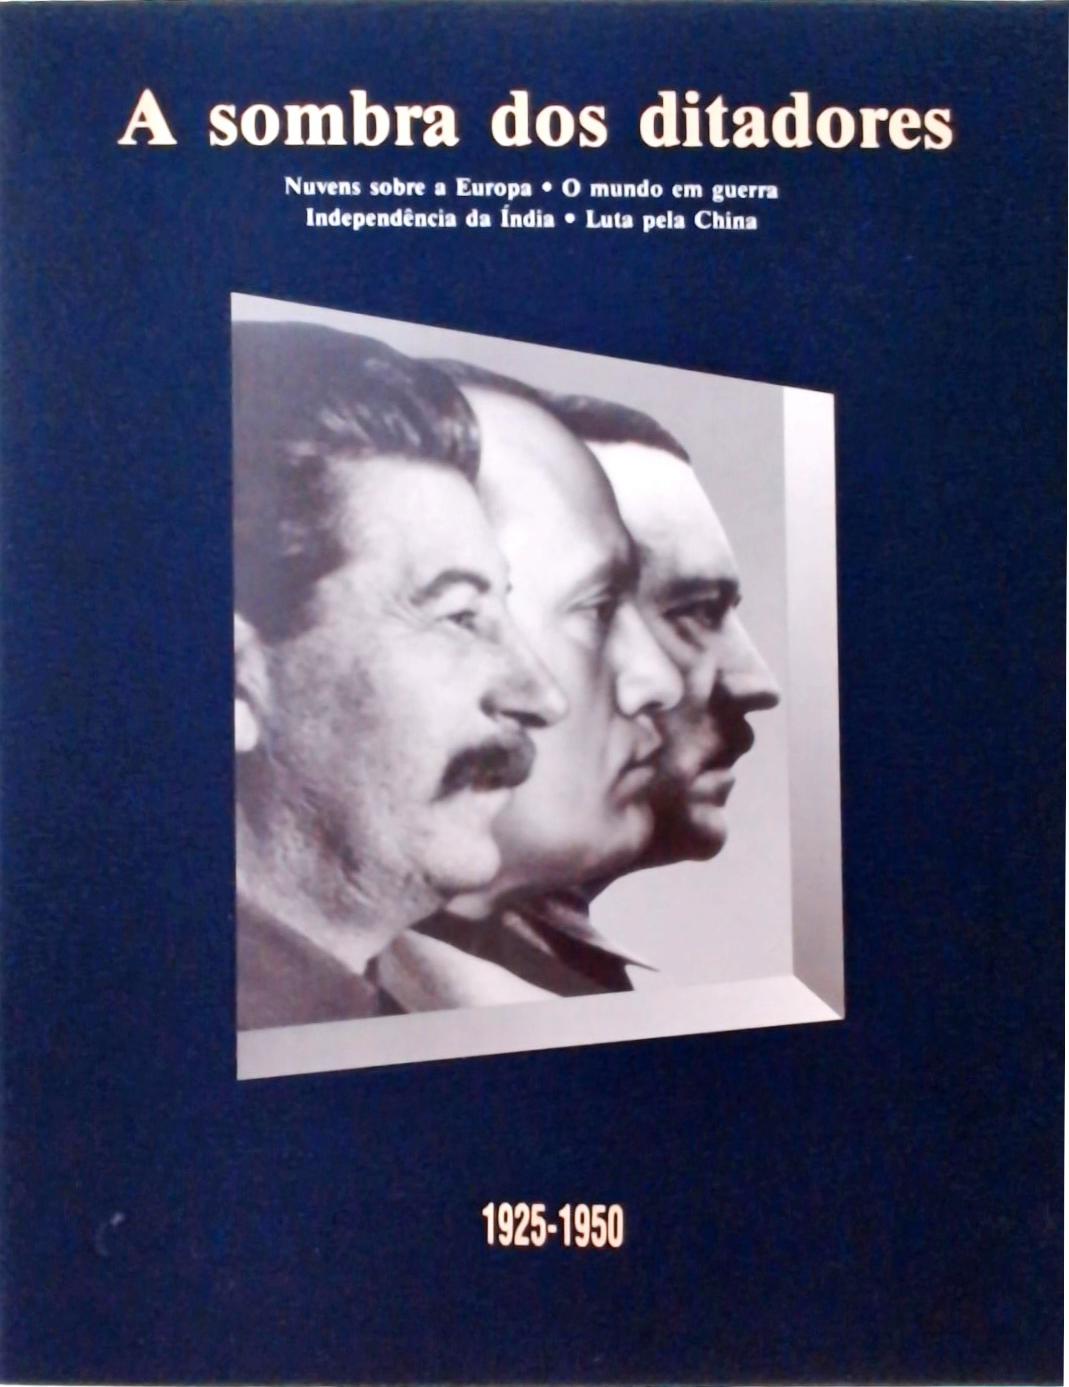 A sombra dos ditadores (1925-1950)